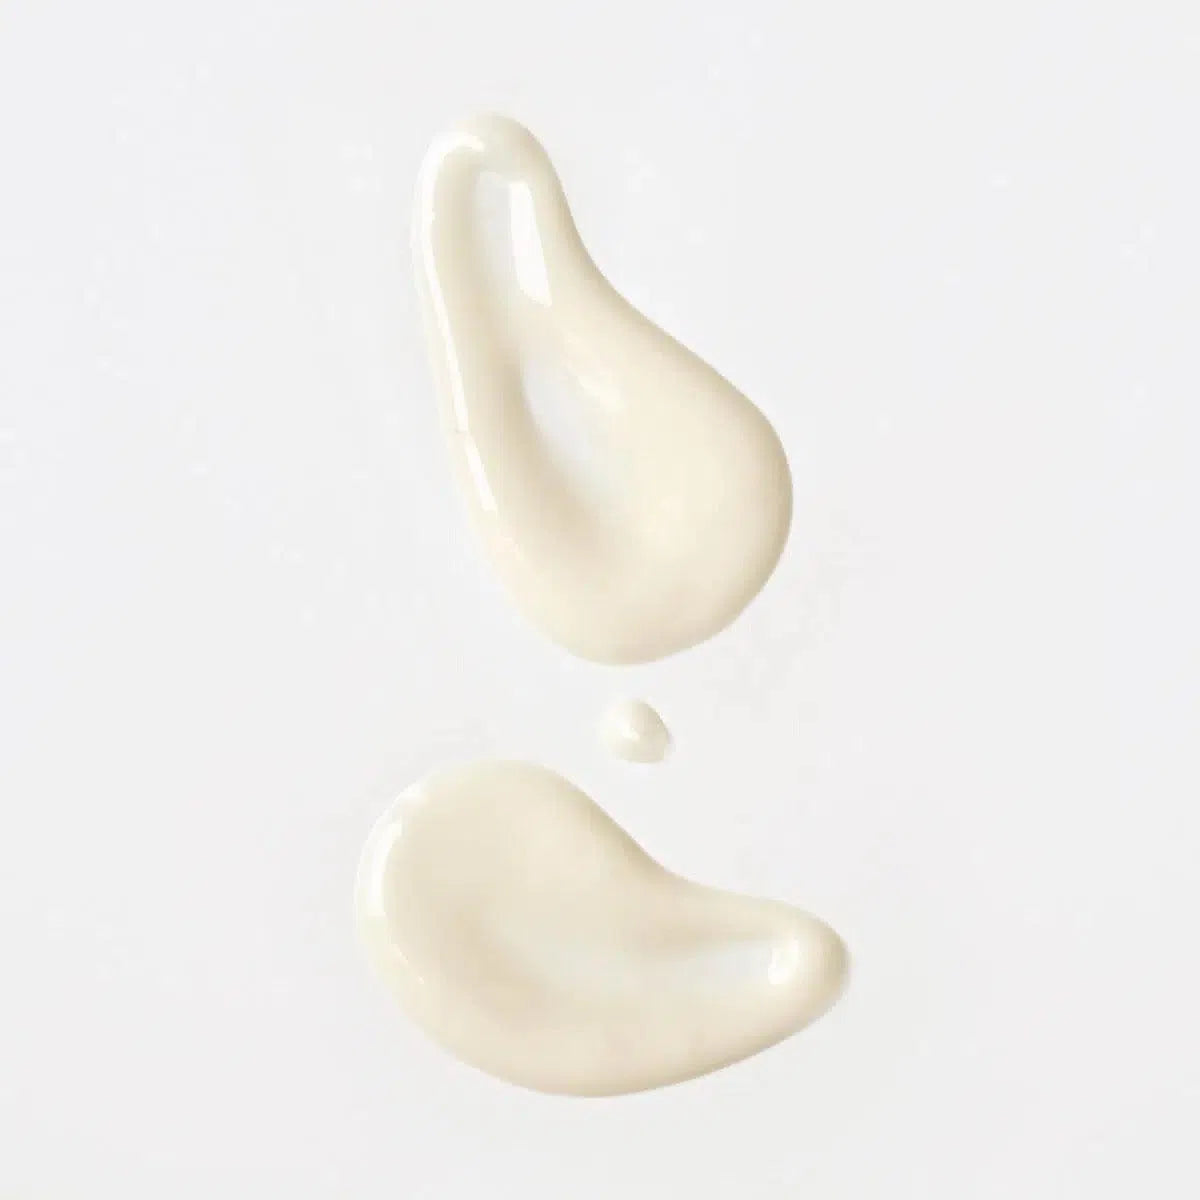 Crème du lait nettoyant et démaquillant de Moom pour le visage qui respecte la peau des femmes enceintes et prévient l'apparition du masque de grossesse